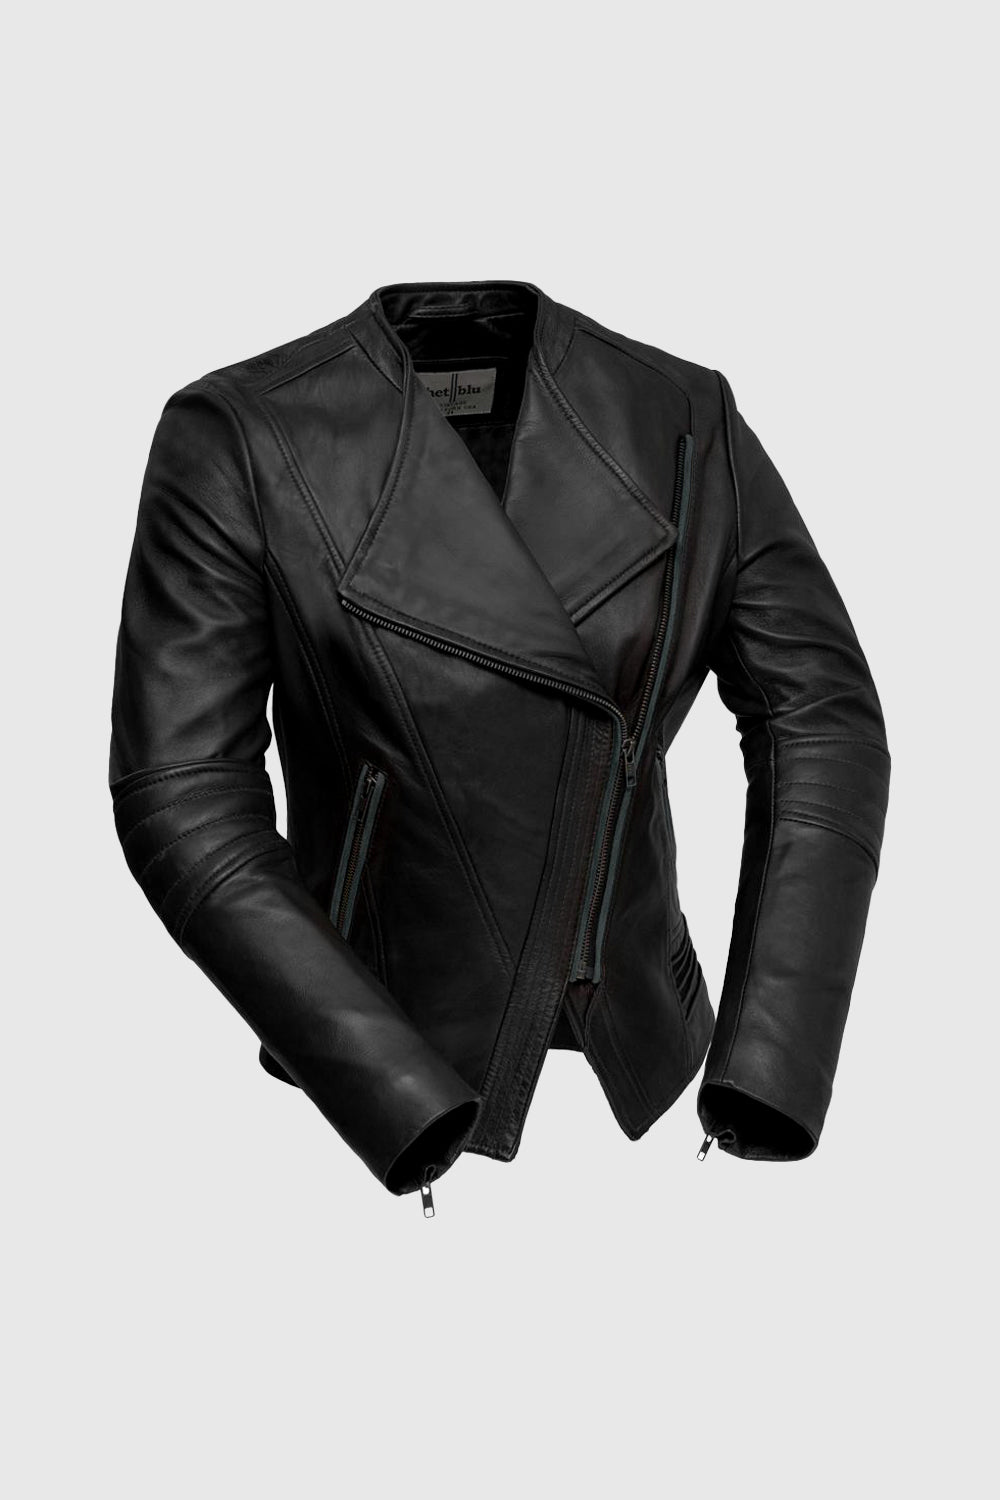 Trish Womens Leather Jacket Black